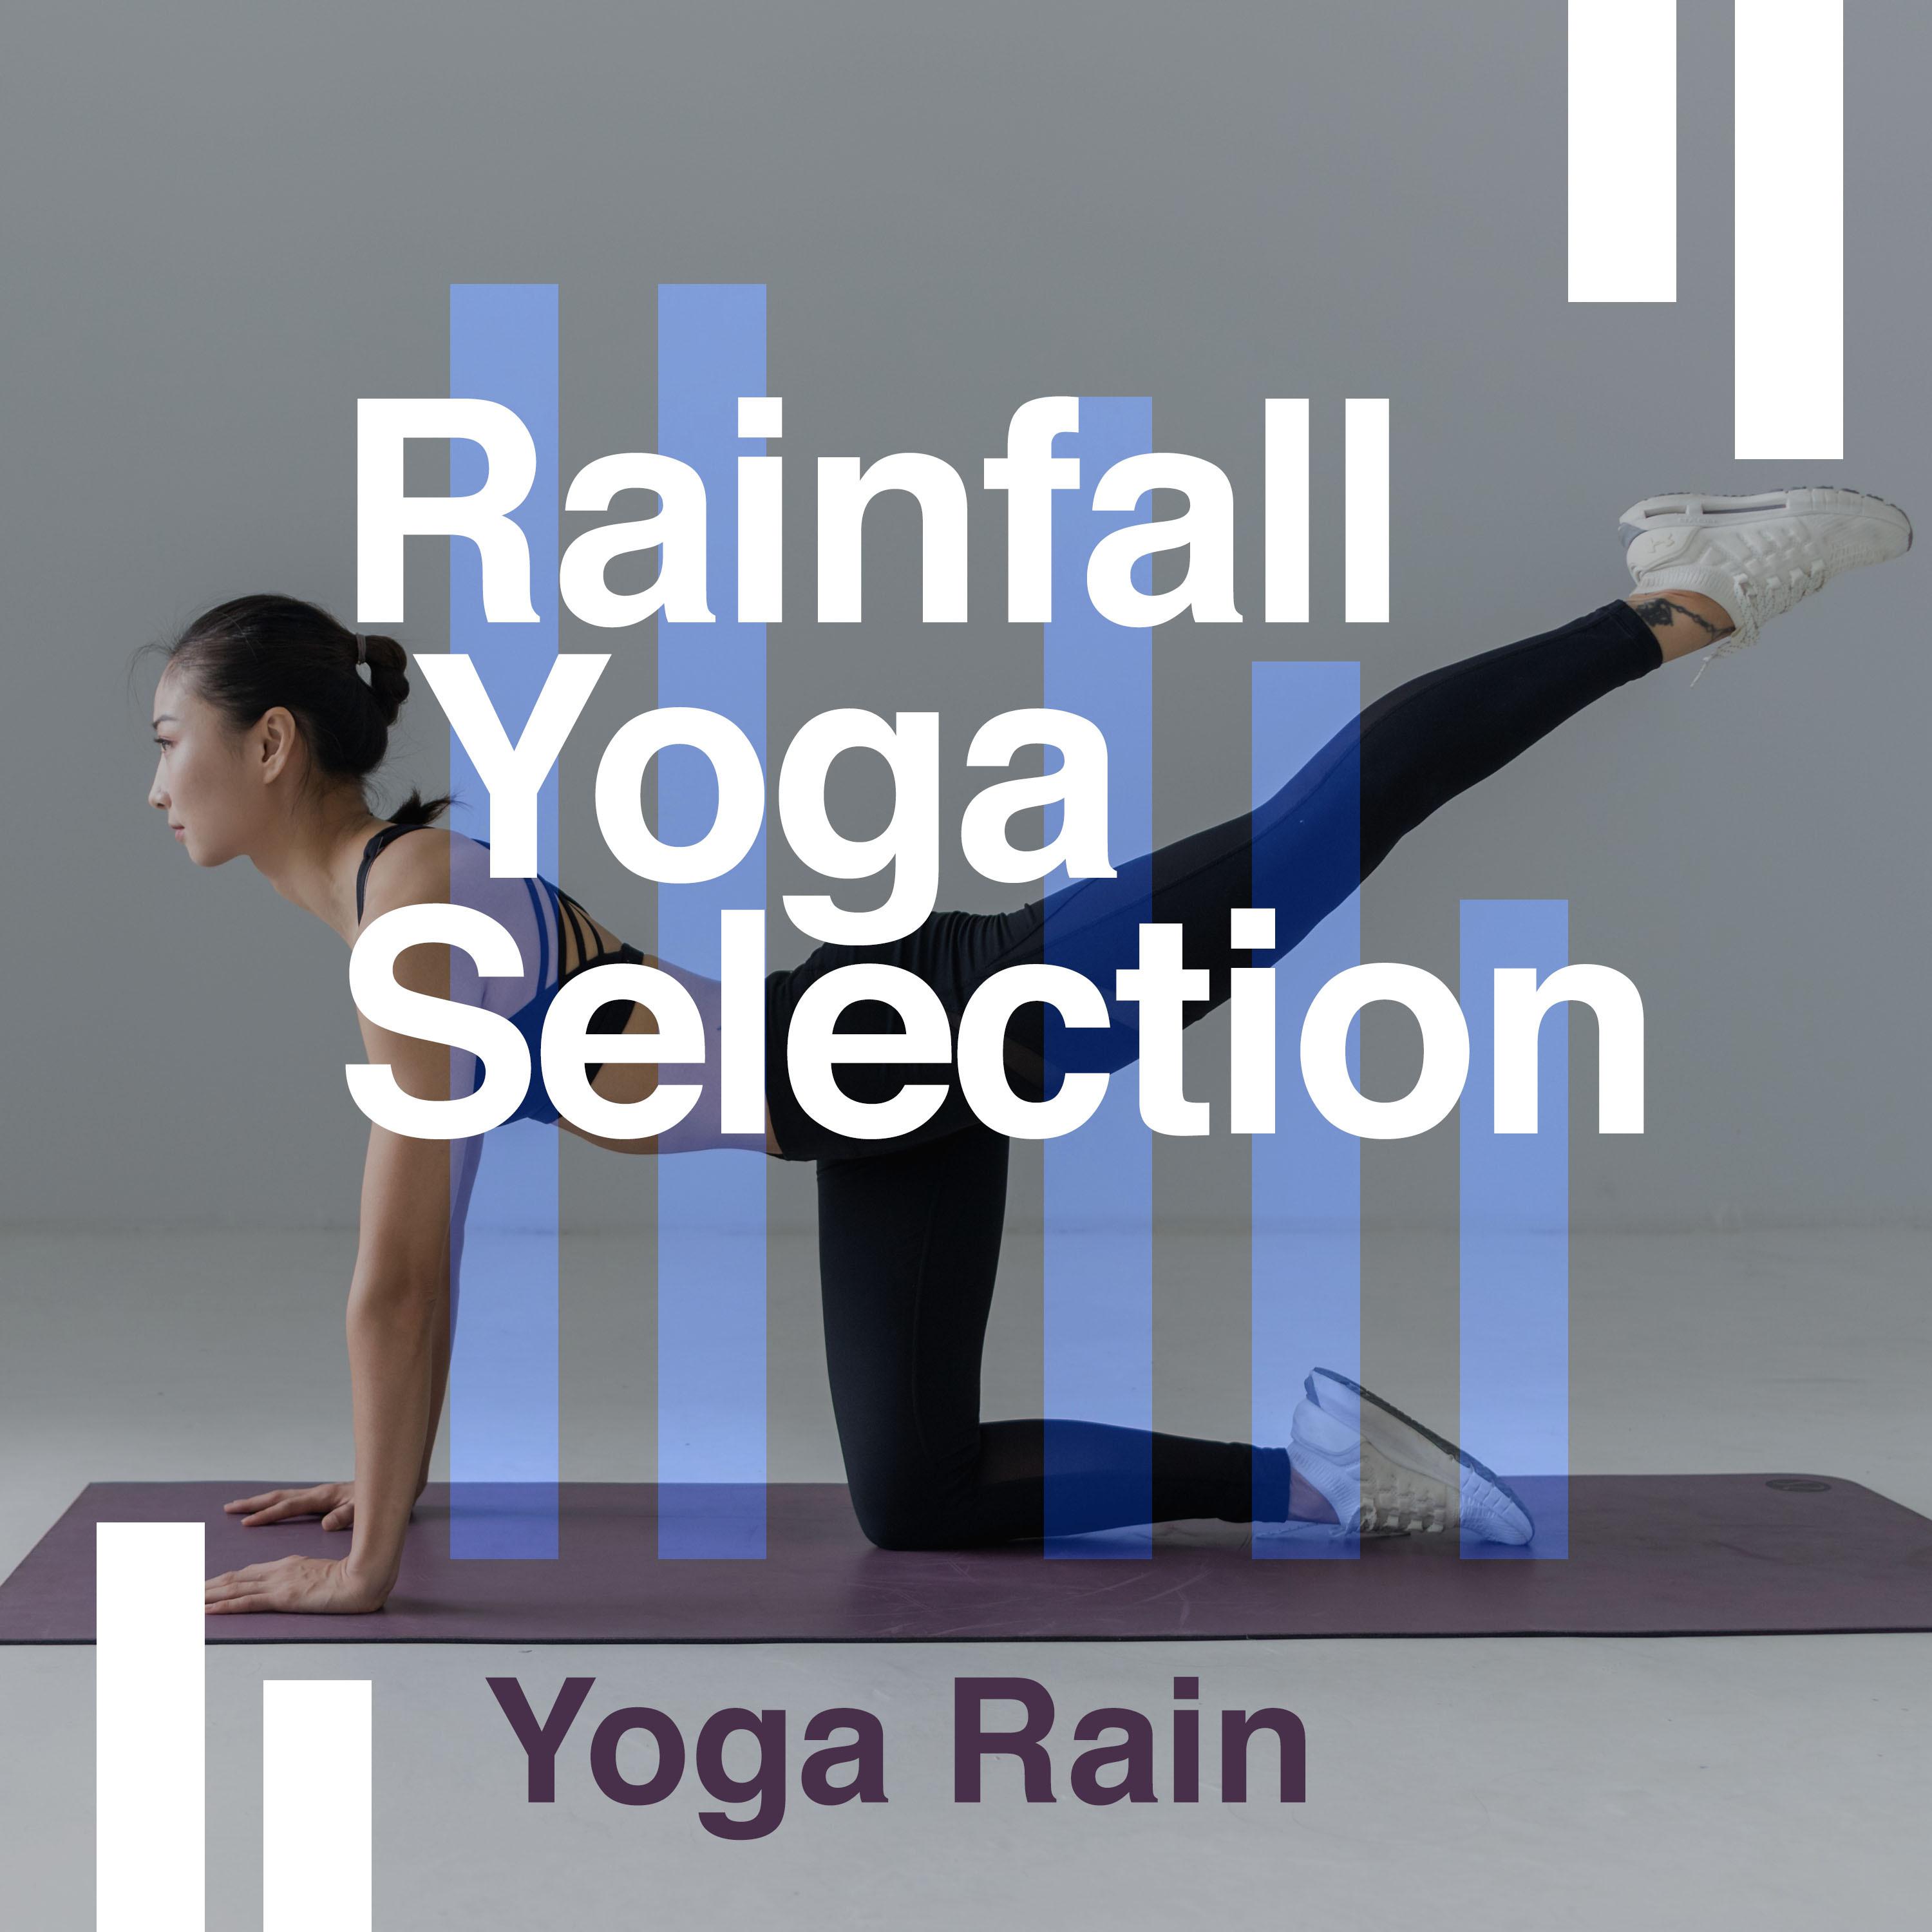 Rainfall Yoga Selection